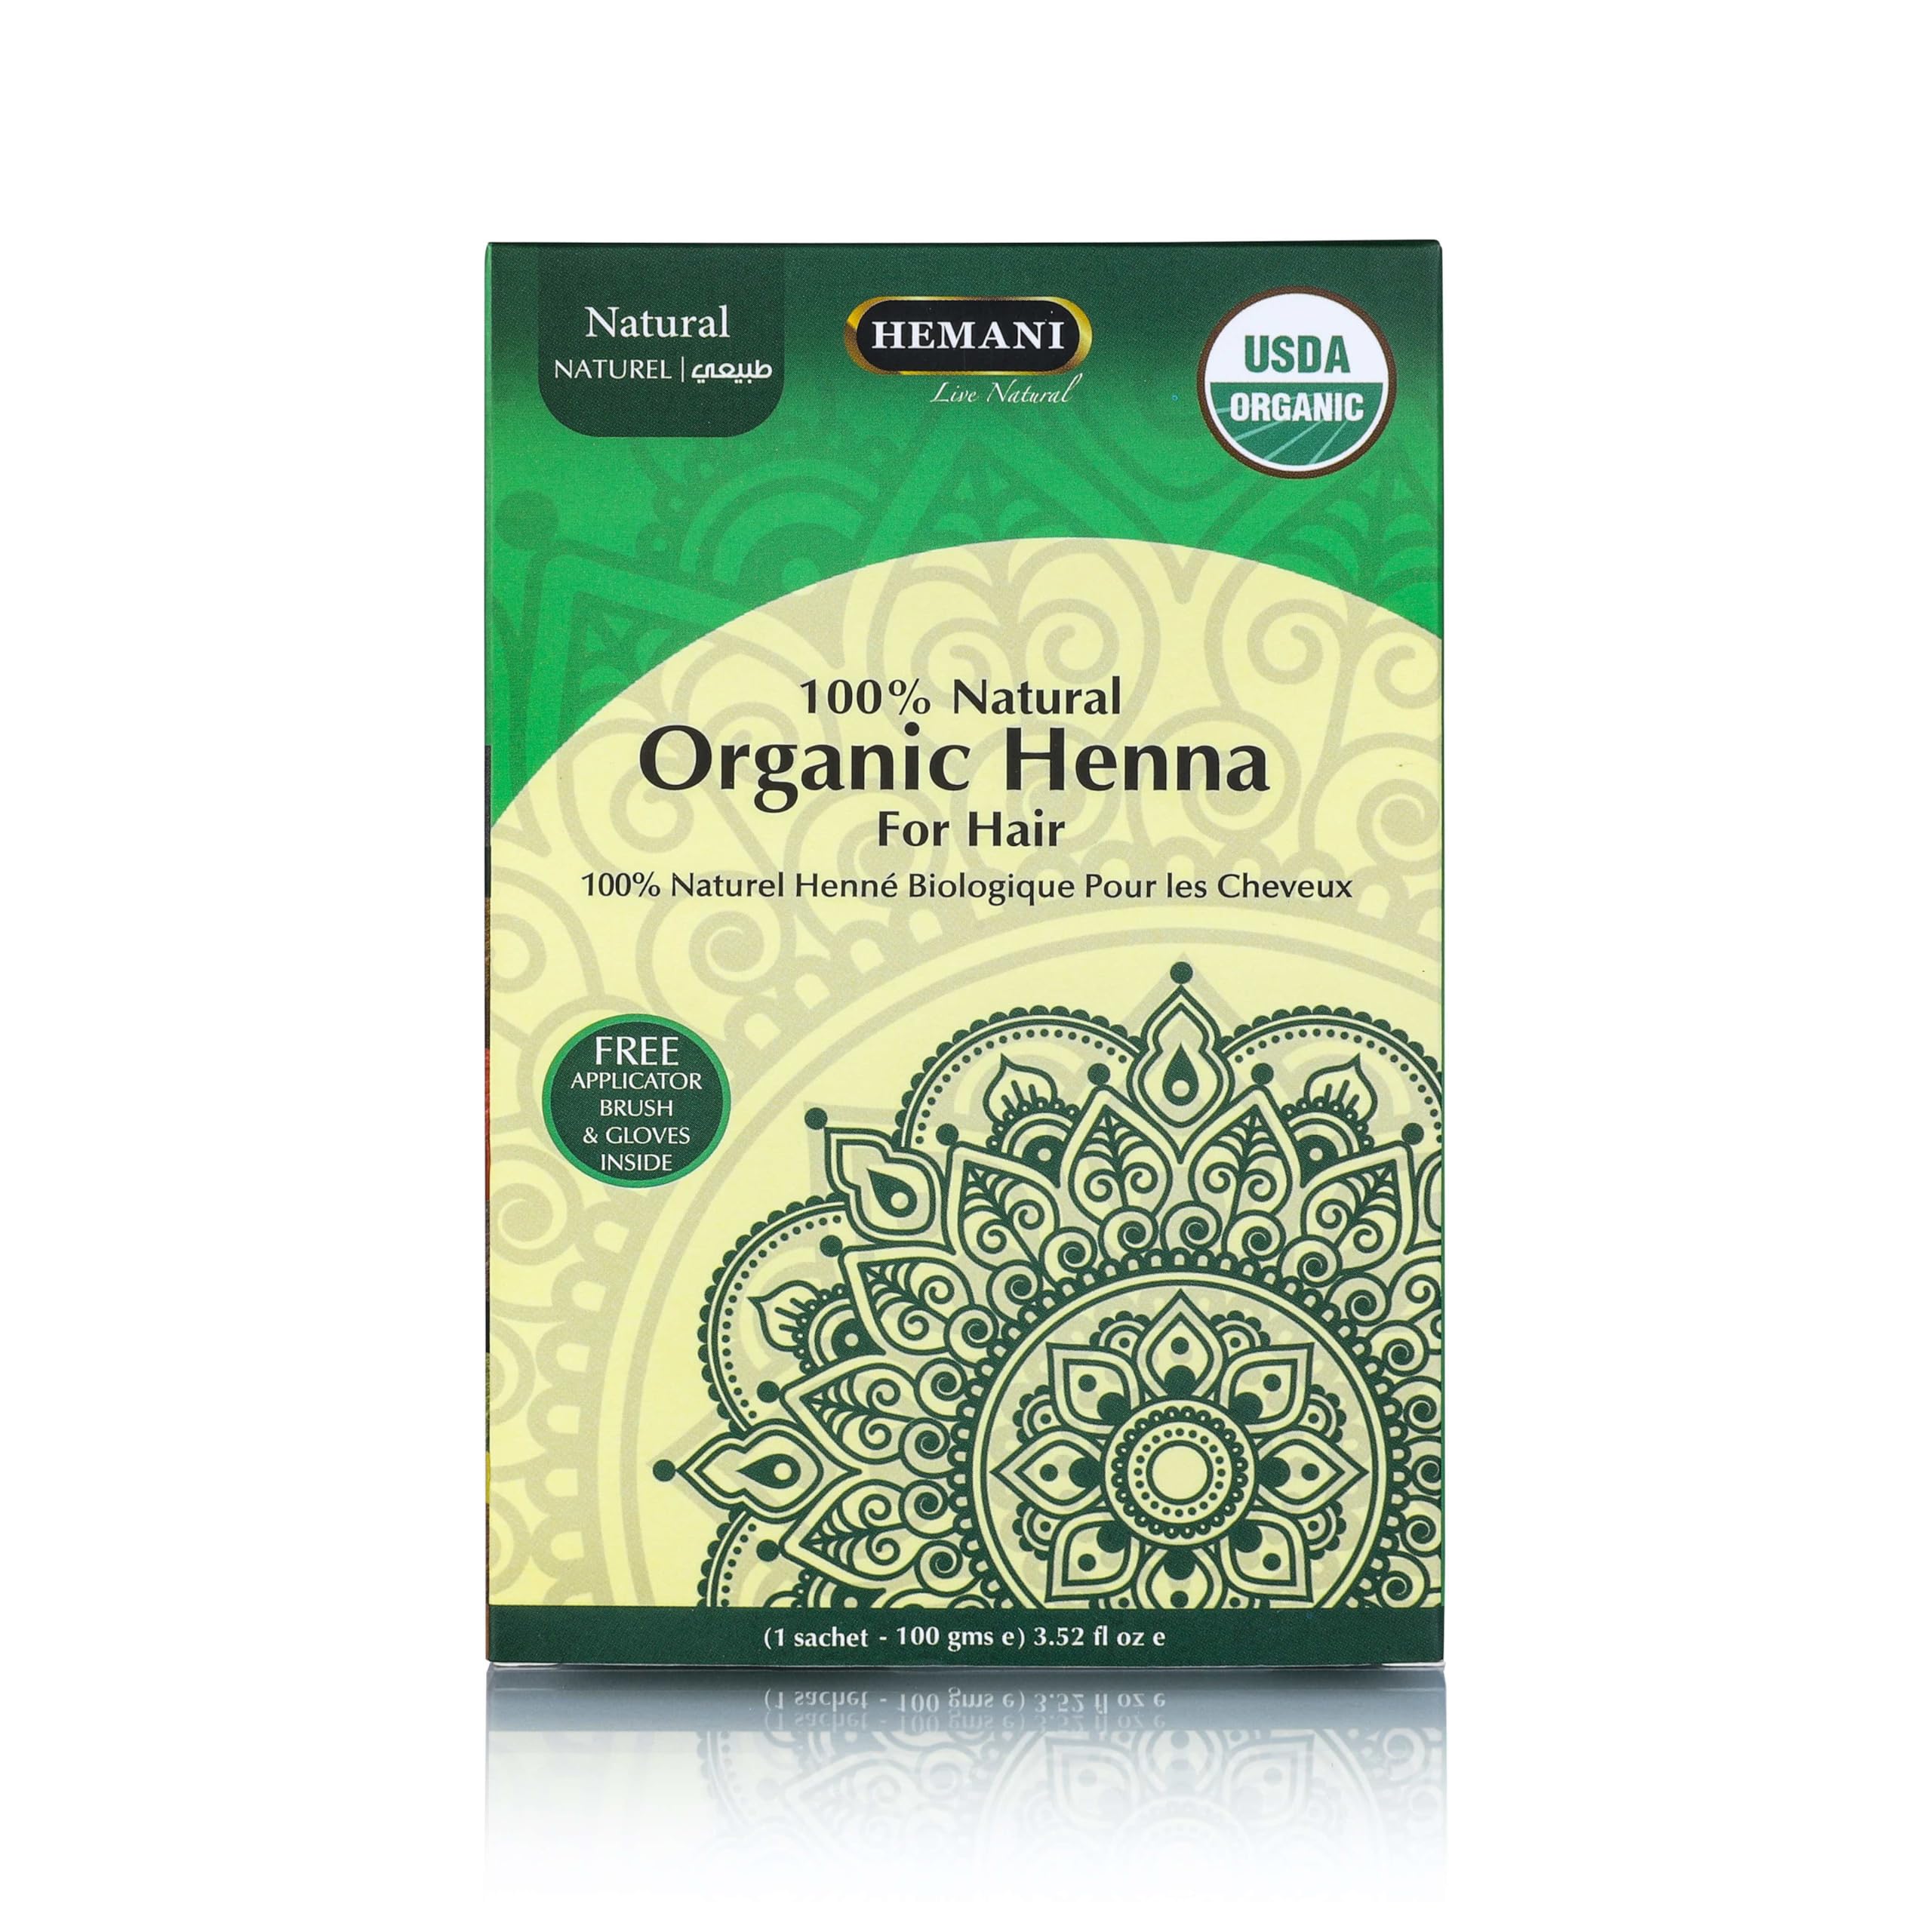 HEMANI Organic Henna Natural 100g